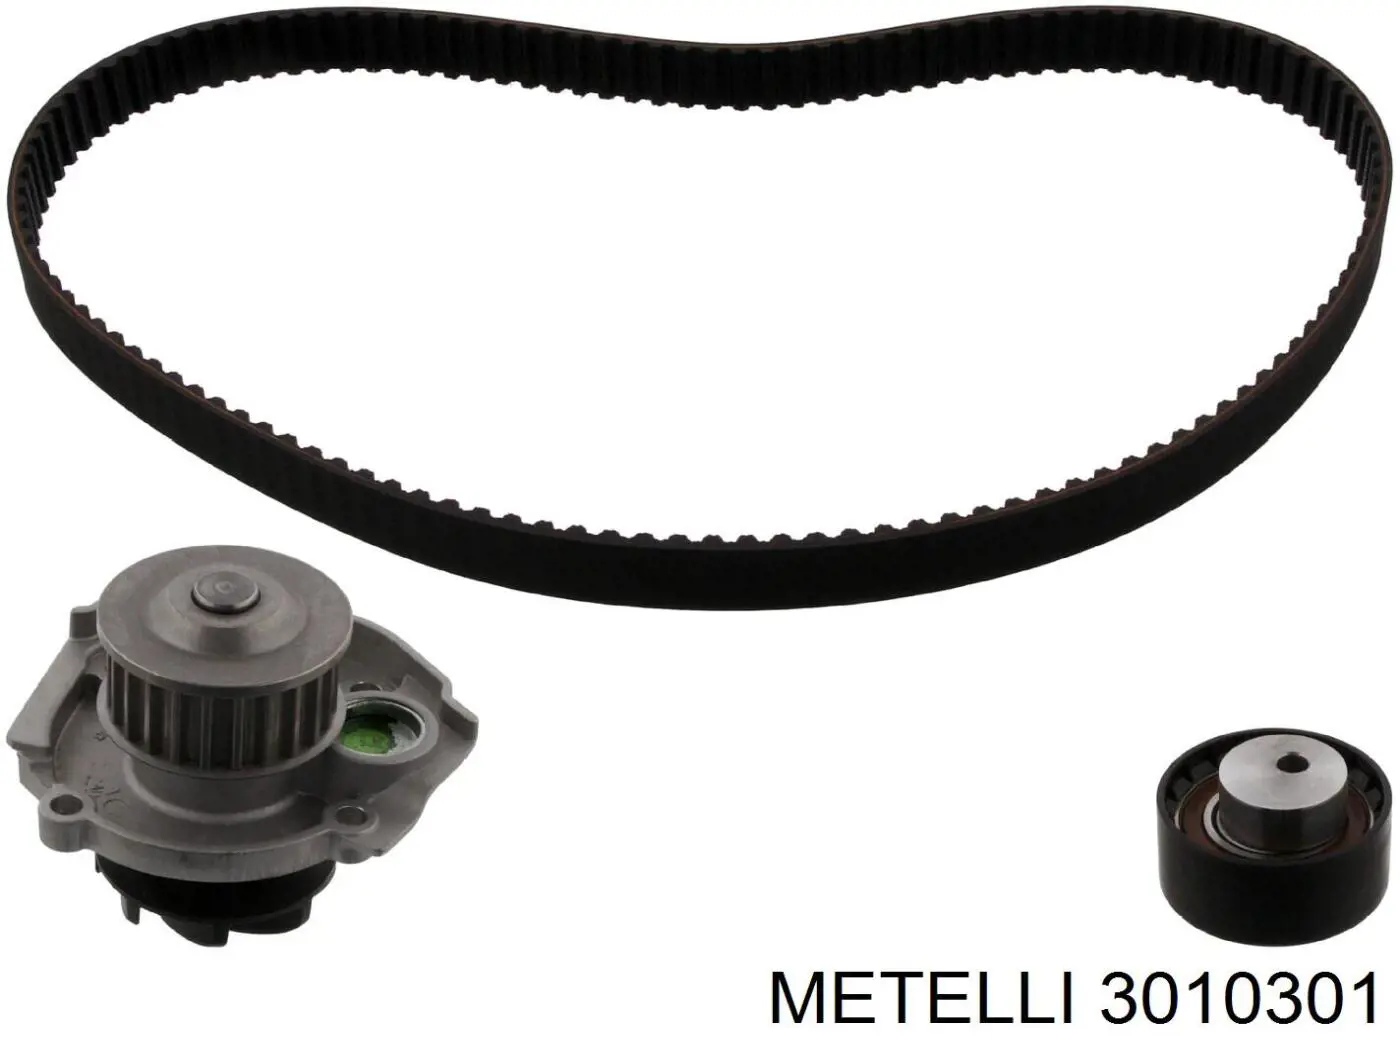 30-1030-1 Metelli correia do mecanismo de distribuição de gás, kit